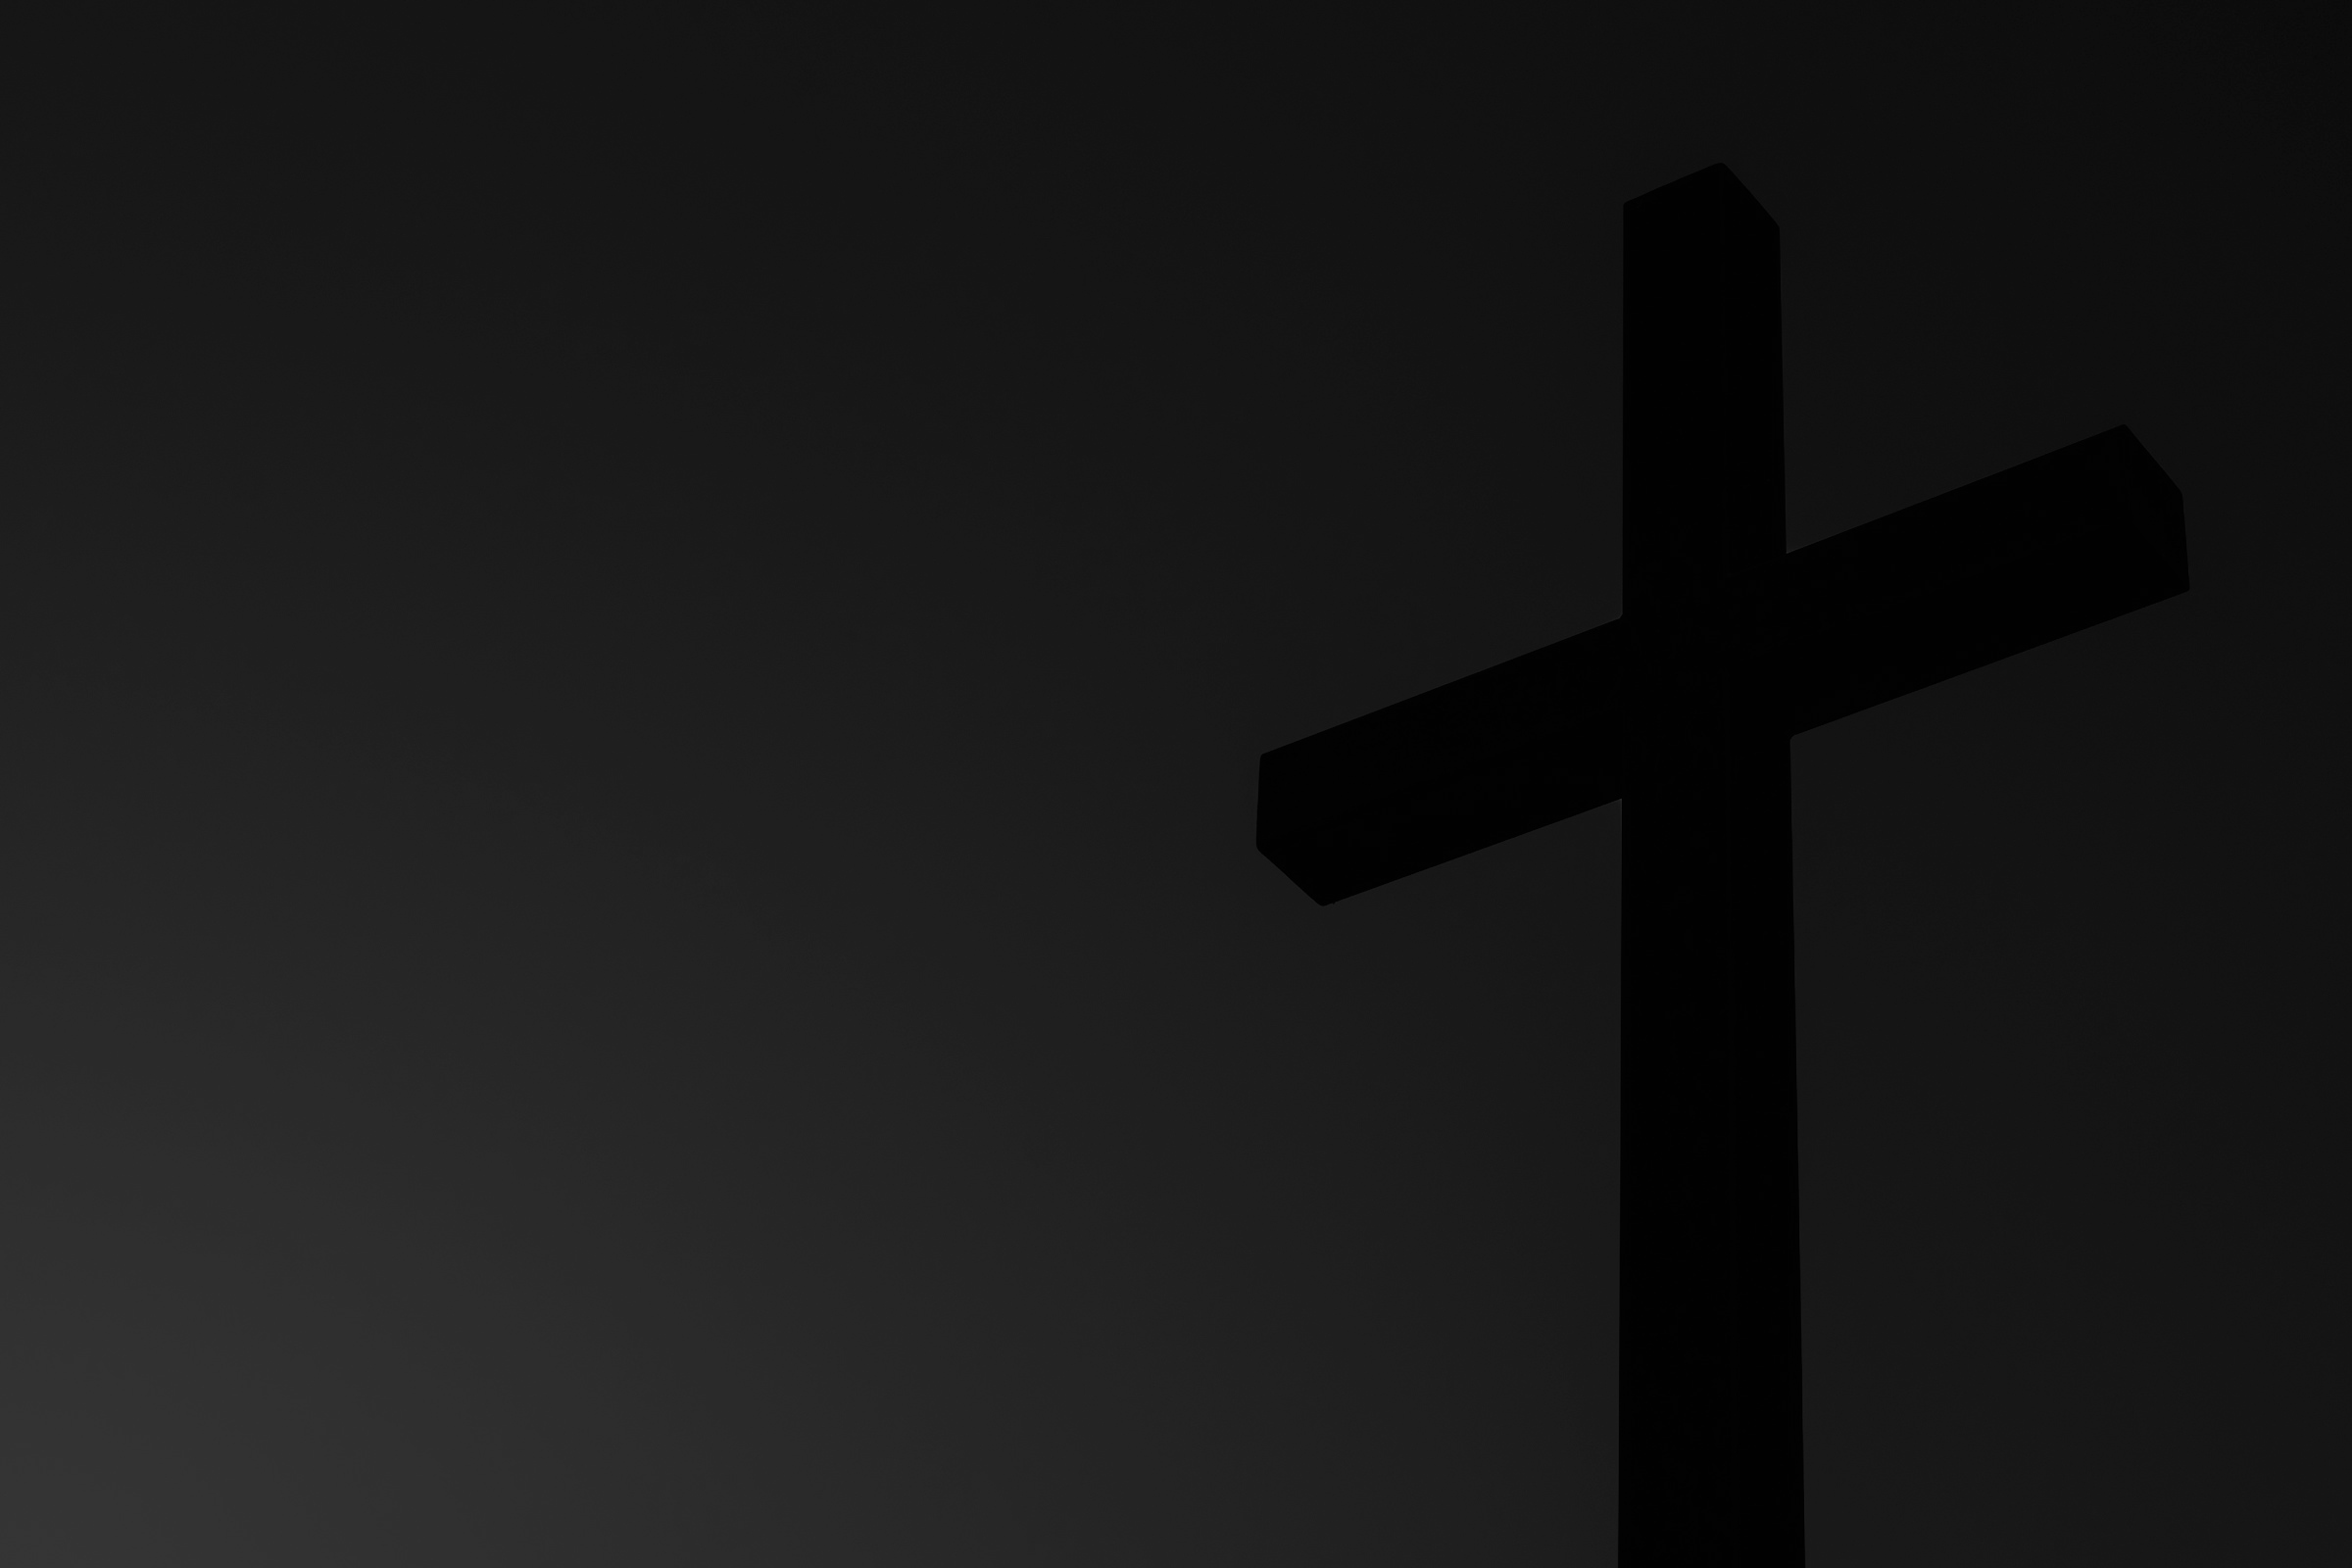 Sehr dunkles Schwarz-Weiß-Bild: Ein schwarzes Kreuz hebt sich vom grauen Hintergrund ab.